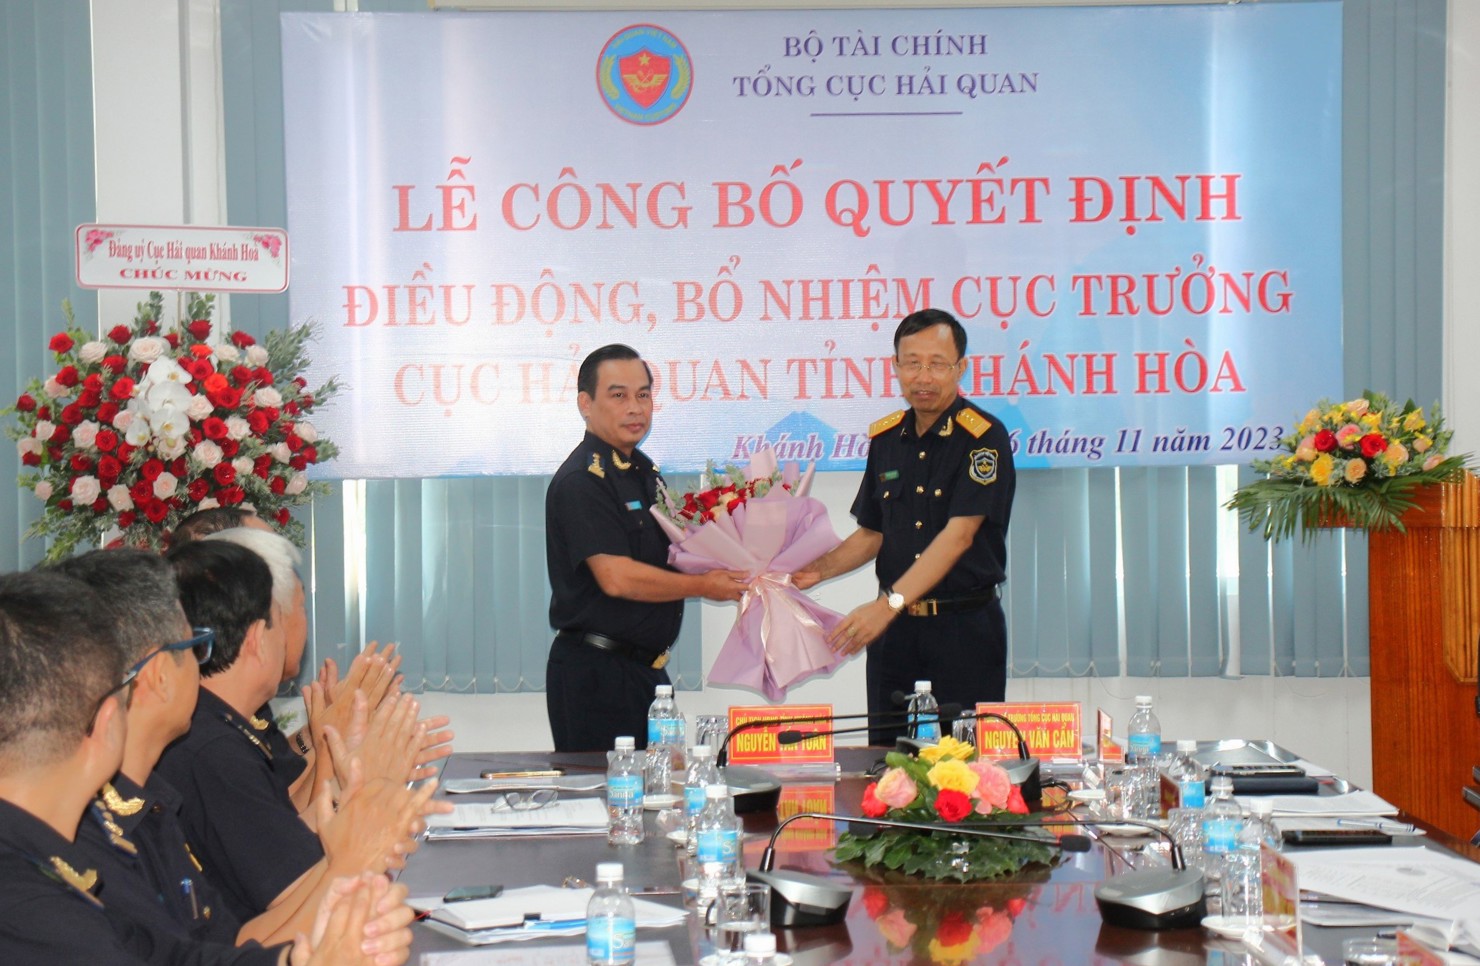 Tổng cục trưởng Tổng cục Hải quan Nguyễn Văn Cẩn trao quyết định bổ nhiệm cho tân Cục trưởng Cục Hải quan Khánh Hòa Vũ Lê Quân.